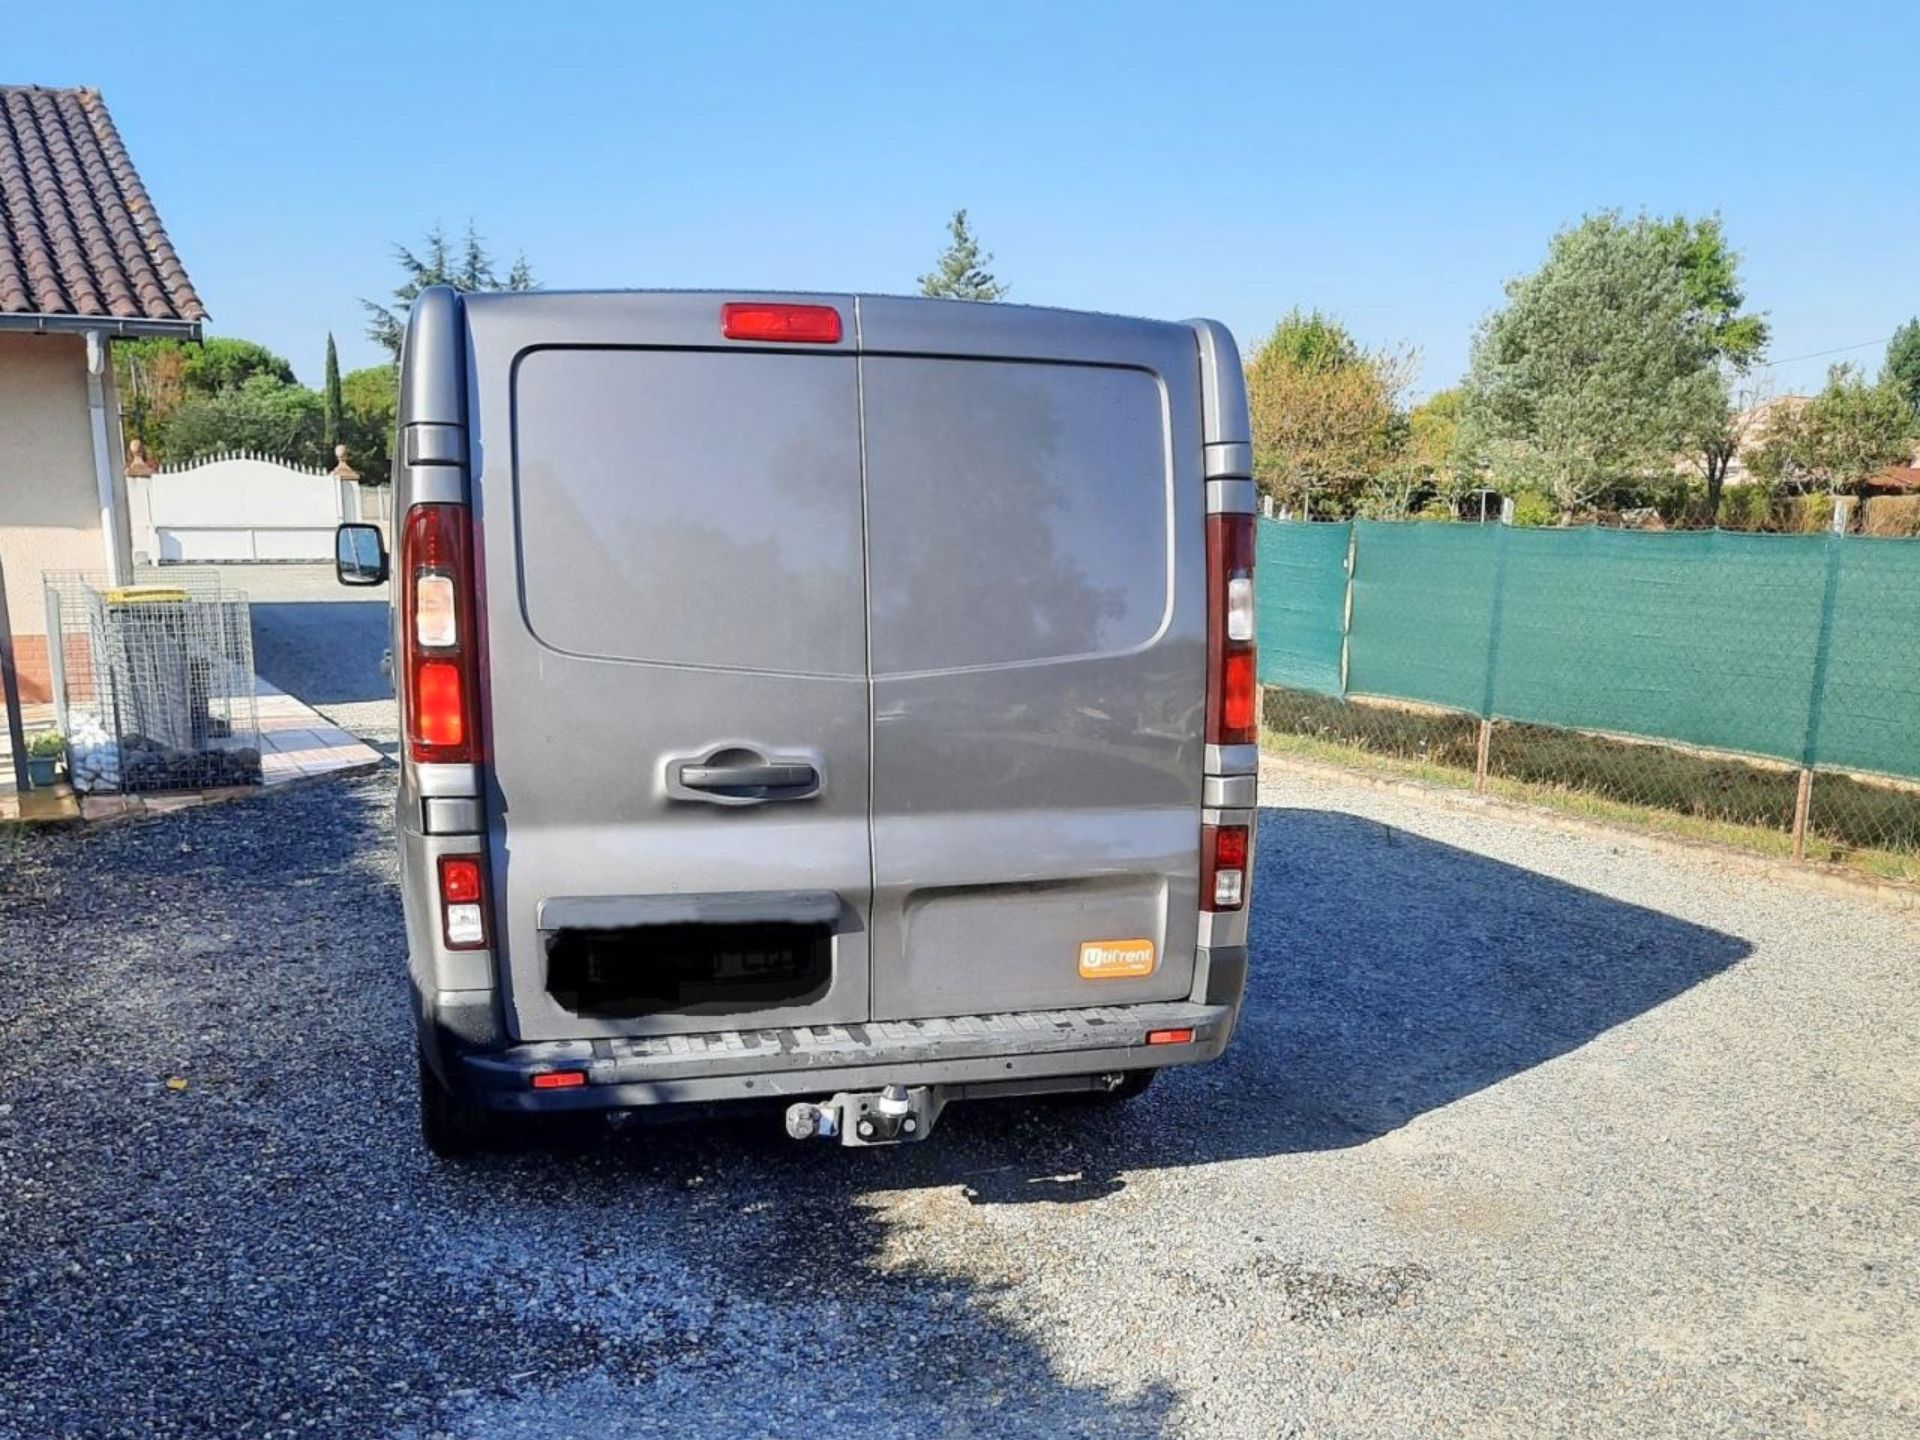 Location en LLD d'un fourgon double cabine Fiat Talento pour un fabricant de meubles à Sarlat-la-Canéda, en Dordogne (24) 7